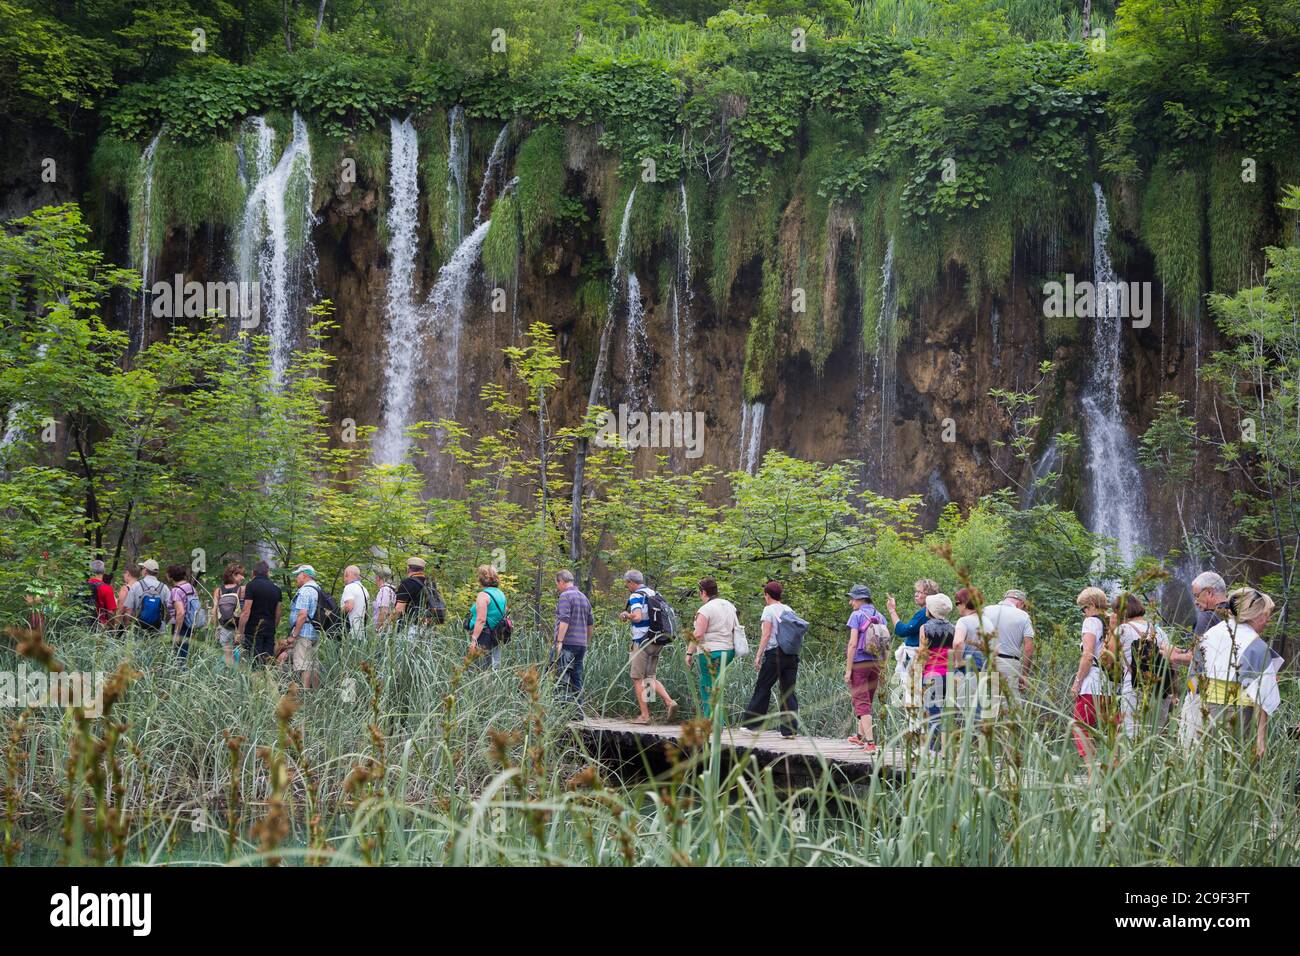 Parc national des lacs de Plitvice, comté de Lika-Senj et comté de Karlovac, Croatie. Les visiteurs se promenent sur les passerelles en bois qui sillonnent le parc. Banque D'Images